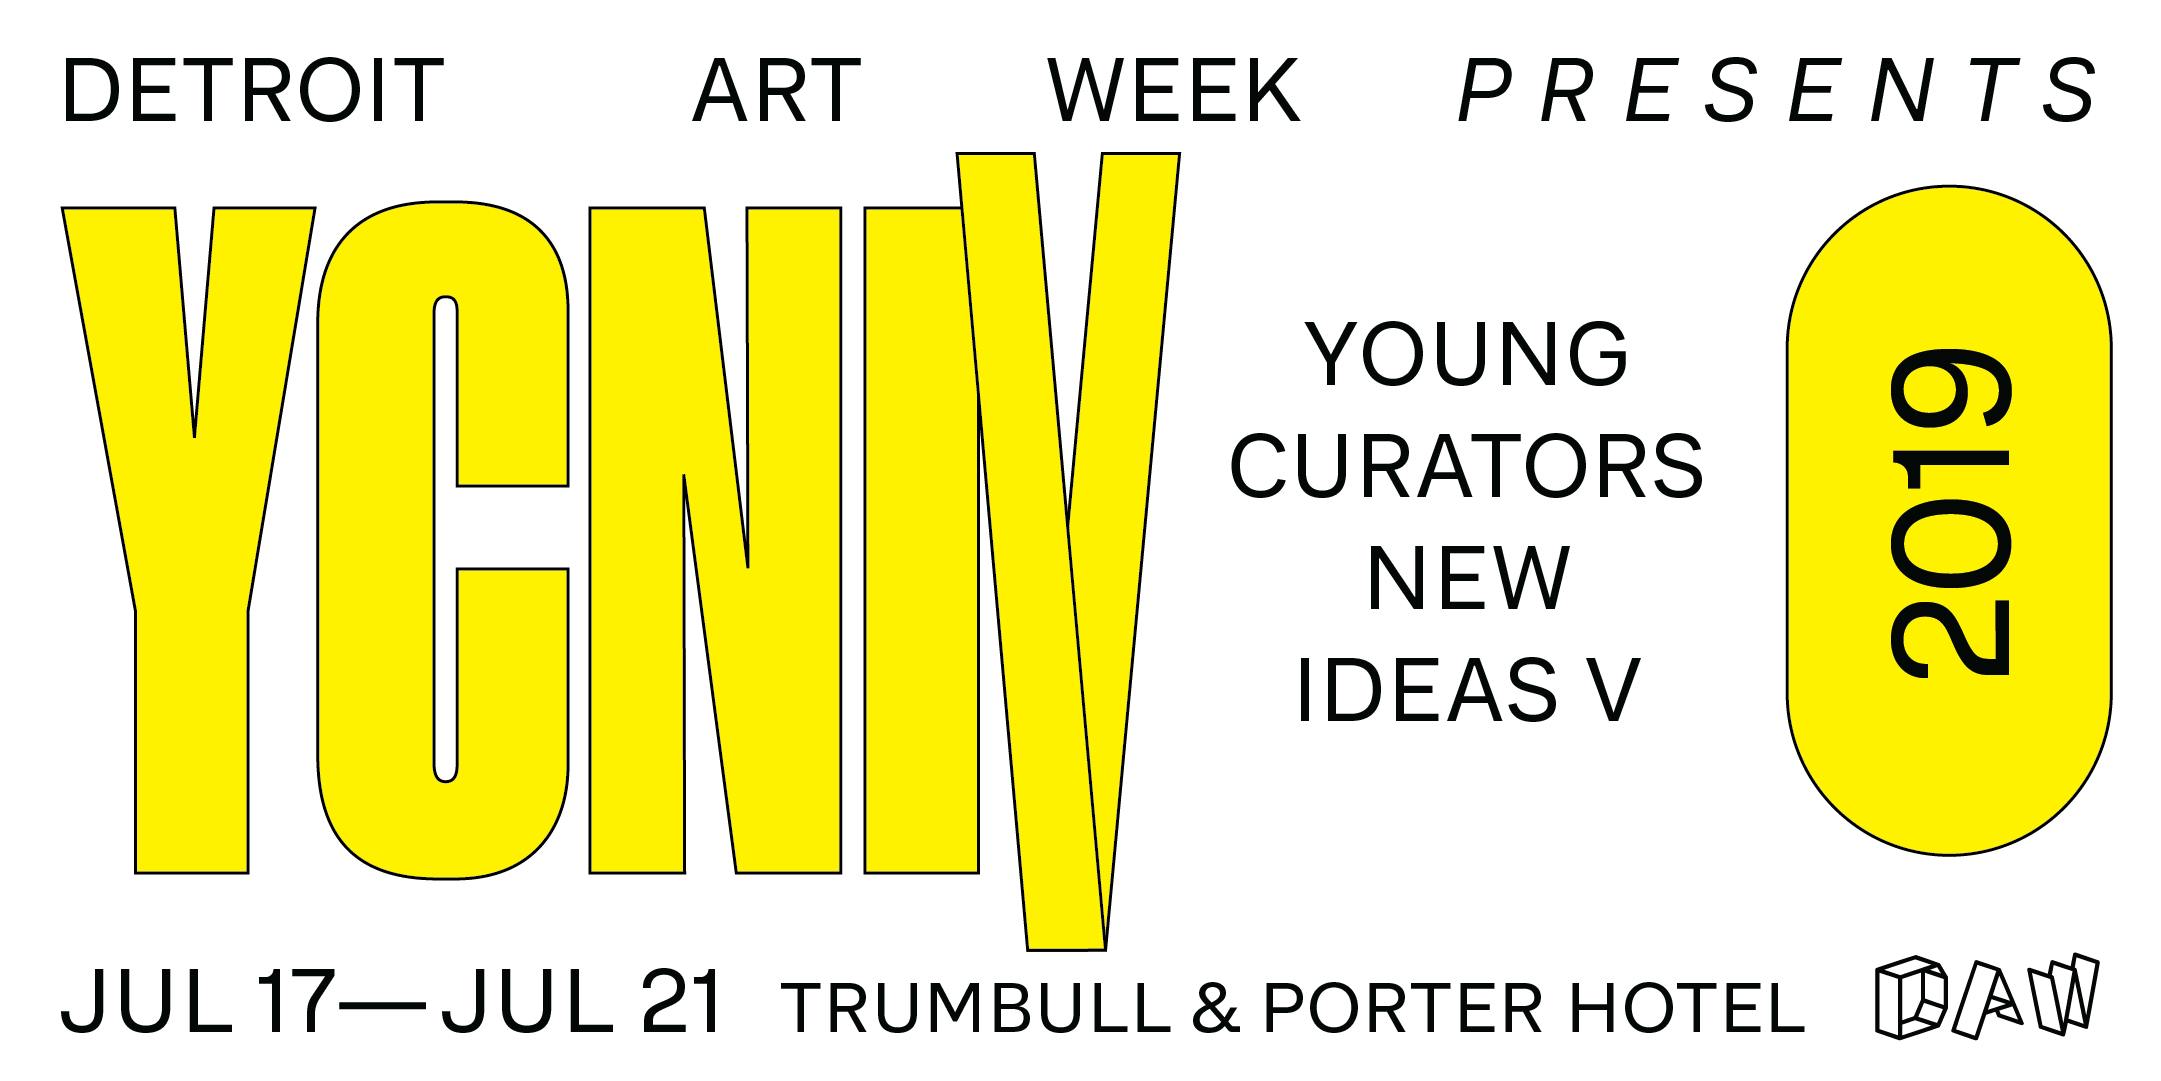 Young Curators New Ideas V